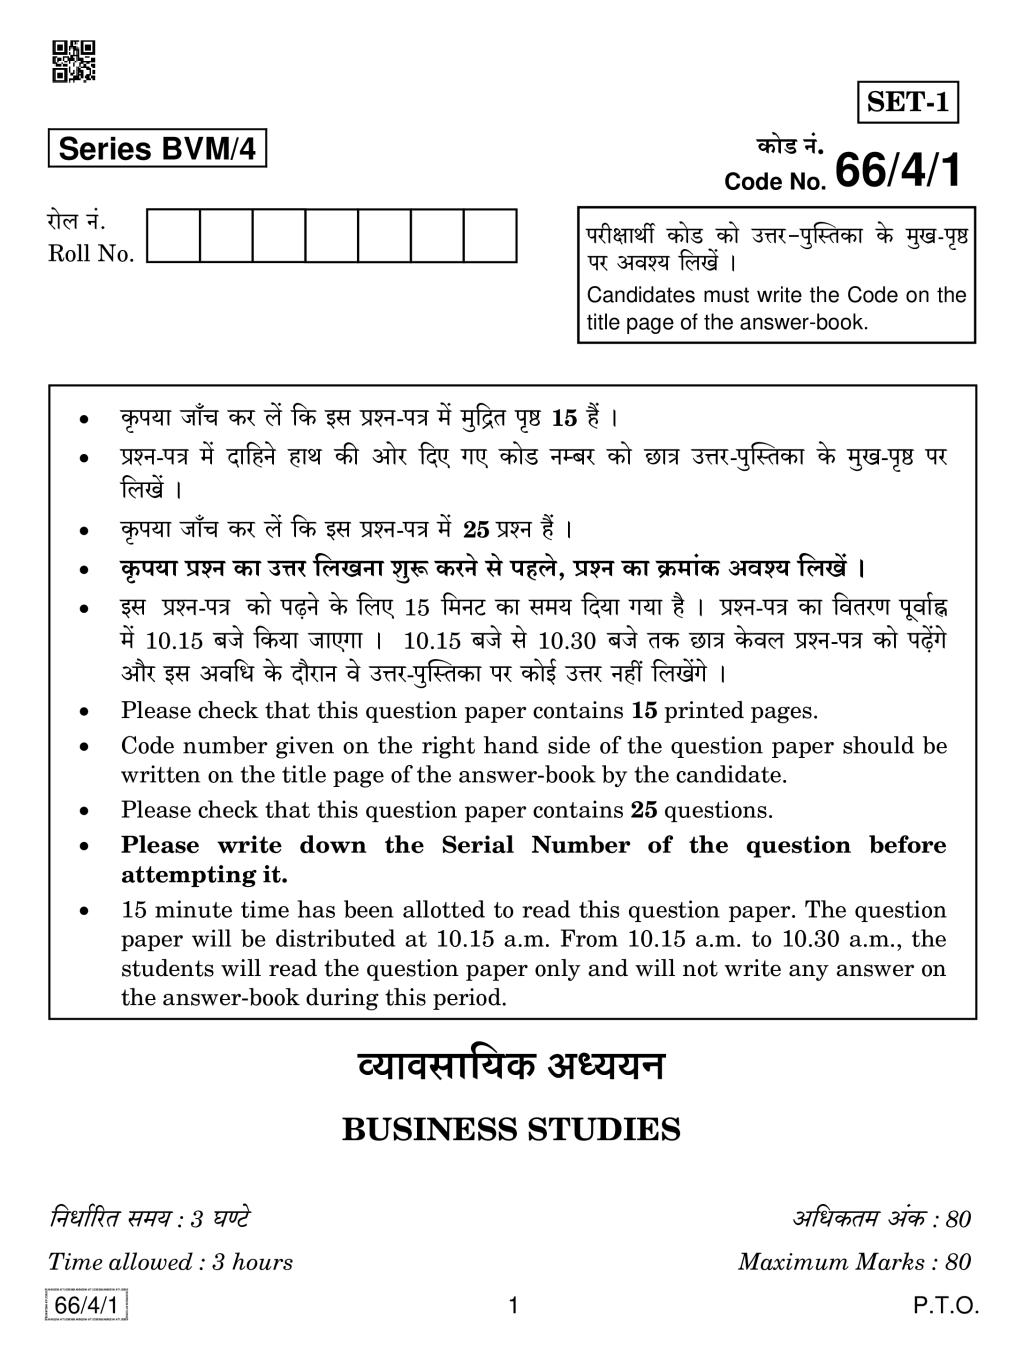 CBSE Class 12 Business Studies Question Paper 2019 Set 4 - Page 1